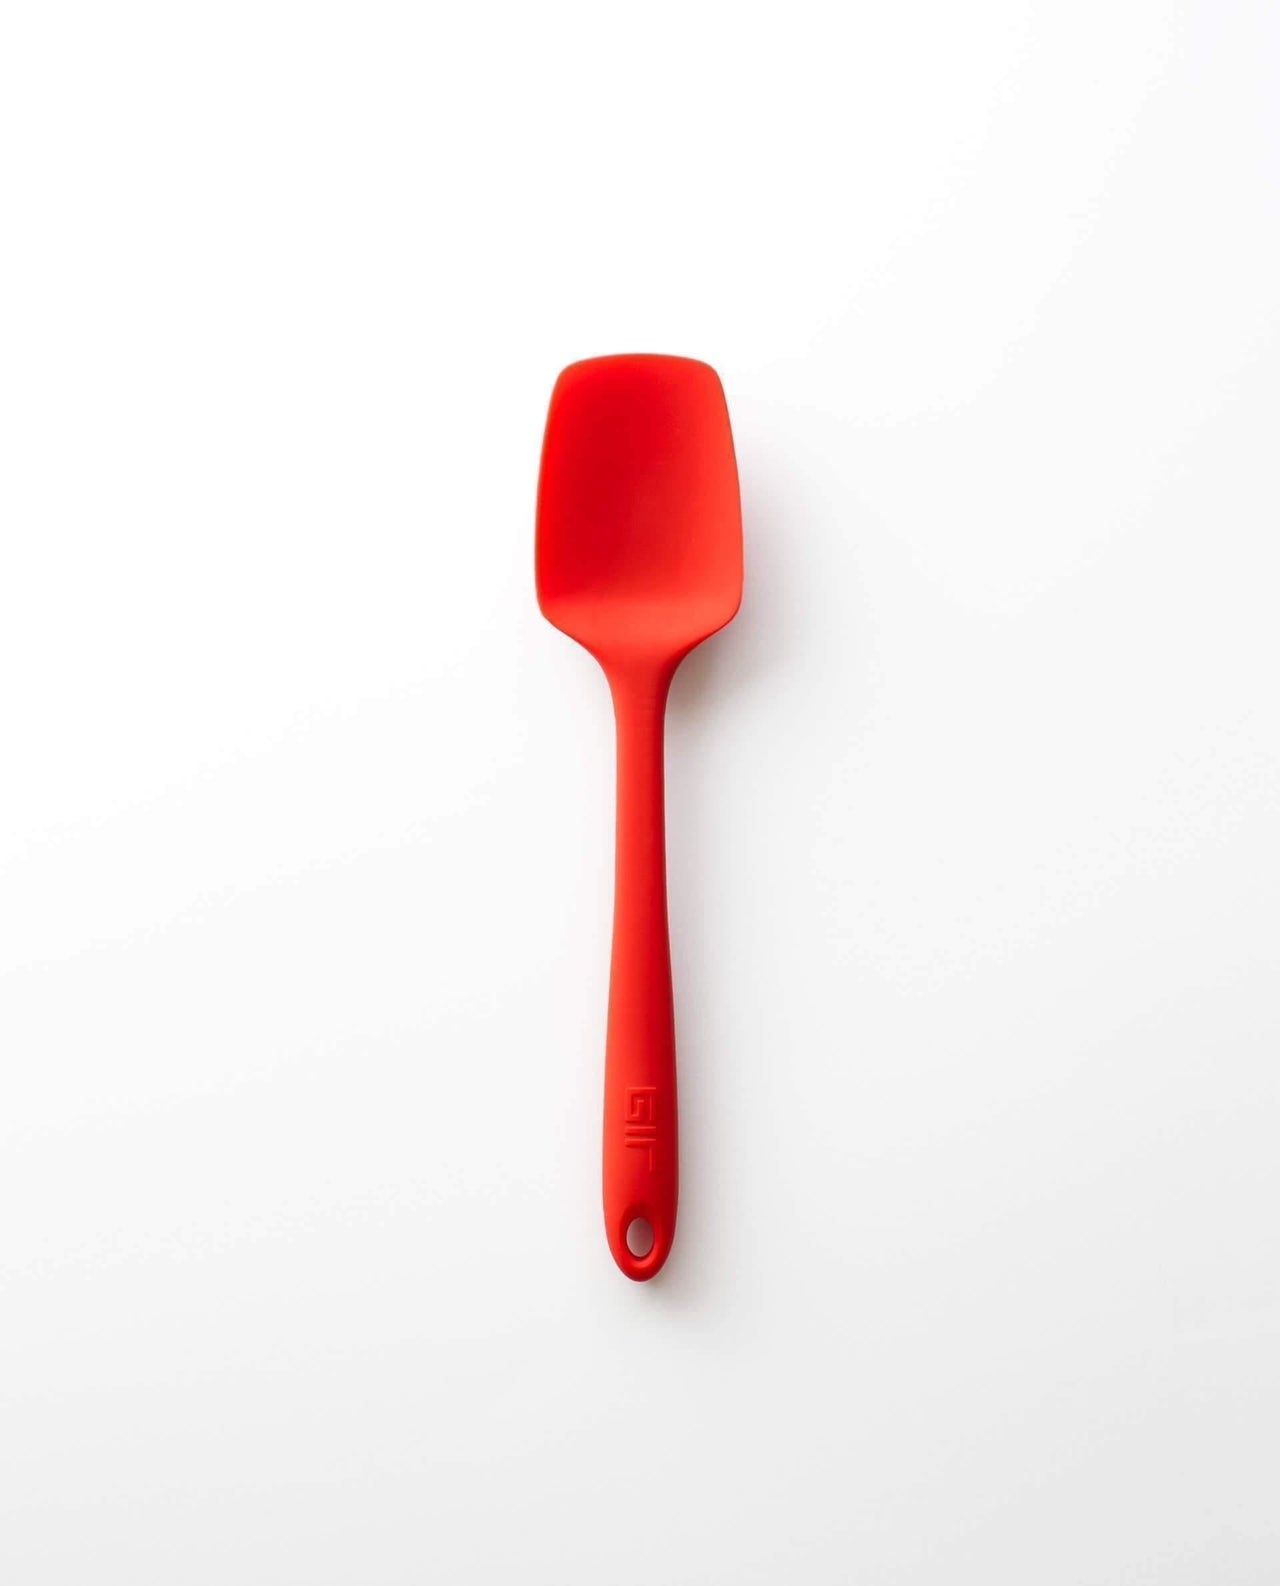 GIR Skinny Spoonula-Accessories-GIR-Red-Carbon Knife Co